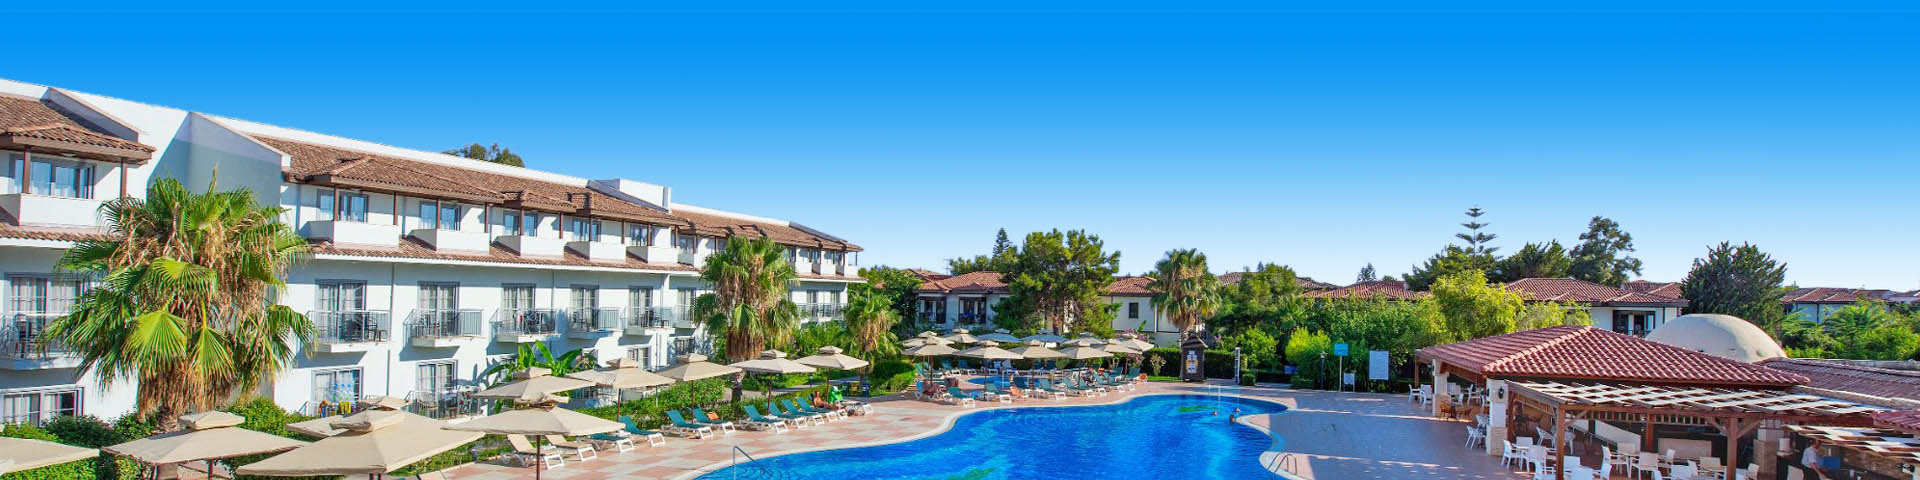 Luxe aparthotel in Side, Turkije met mooi zwembad en zonneterras